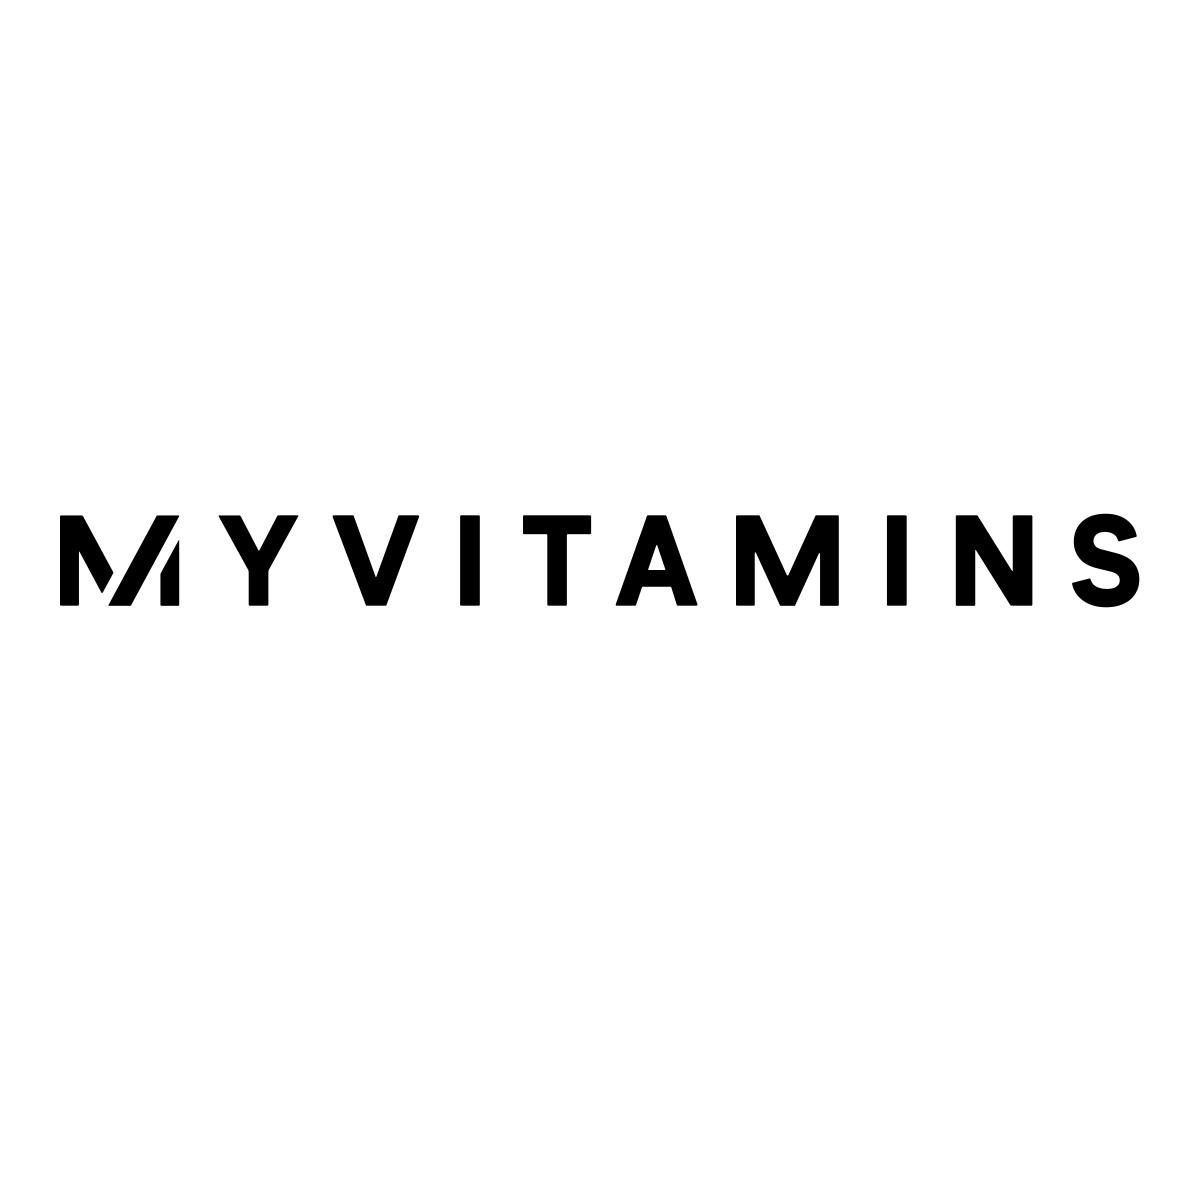 www.myvitamins.com